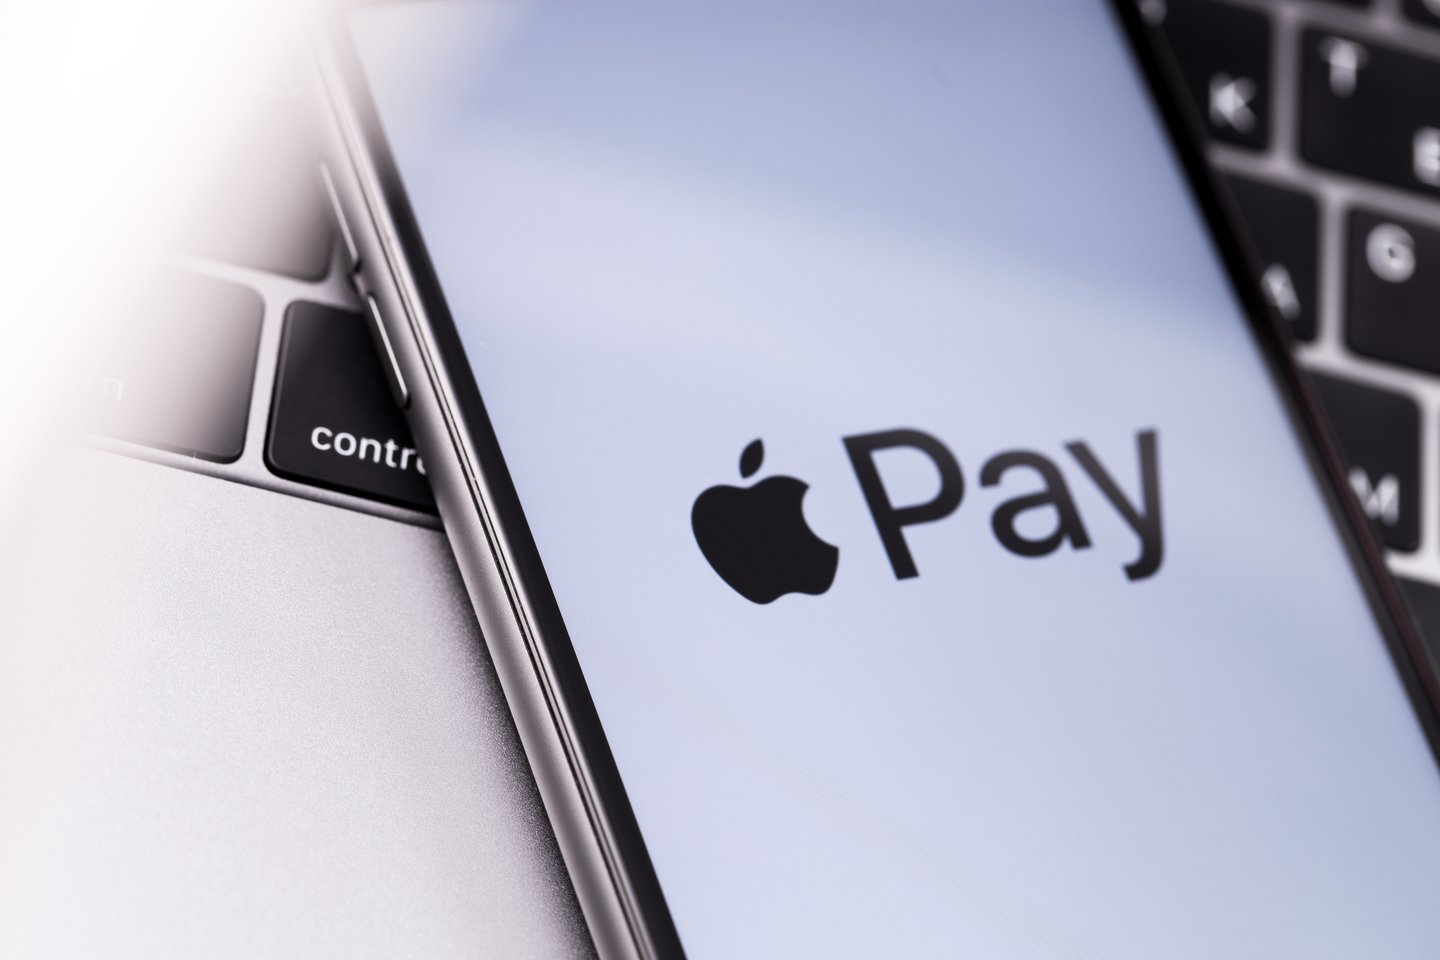  2014 metais rinkoje pristatyta paslauga „Apple Pay“ išmaniųjų telefonų „iPhone“ arba išmaniųjų laikrodžių „Apple Watch“ naudotojams leidžia atlikti mokėjimus parduotuvėse savo prietaisu priliečiant mokėjimo terminalus.<br> 123rf nuotr.